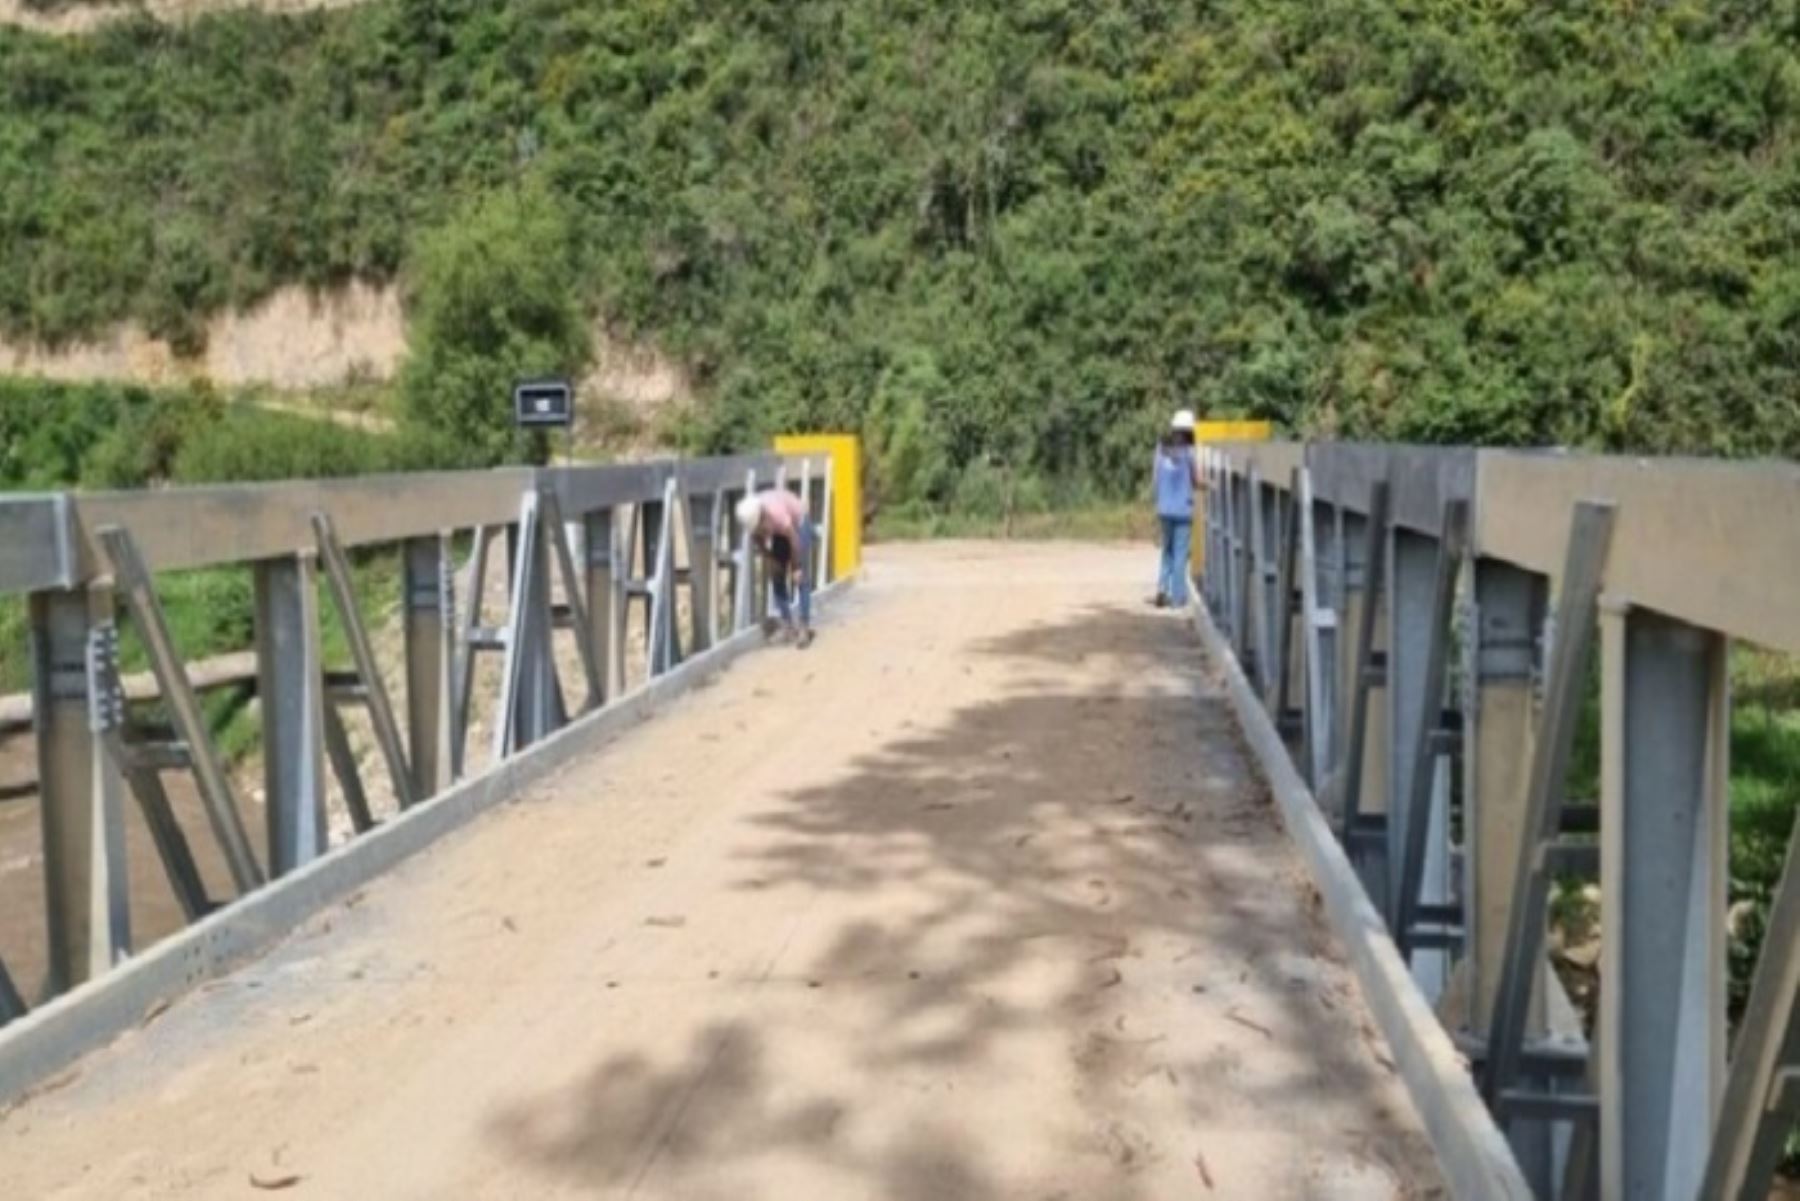 En setiembre próximo el MTC lanzará una convocatoria para ejecutar 11 puentes en provincias de Piura, con una inversión de S/ 596 millones.